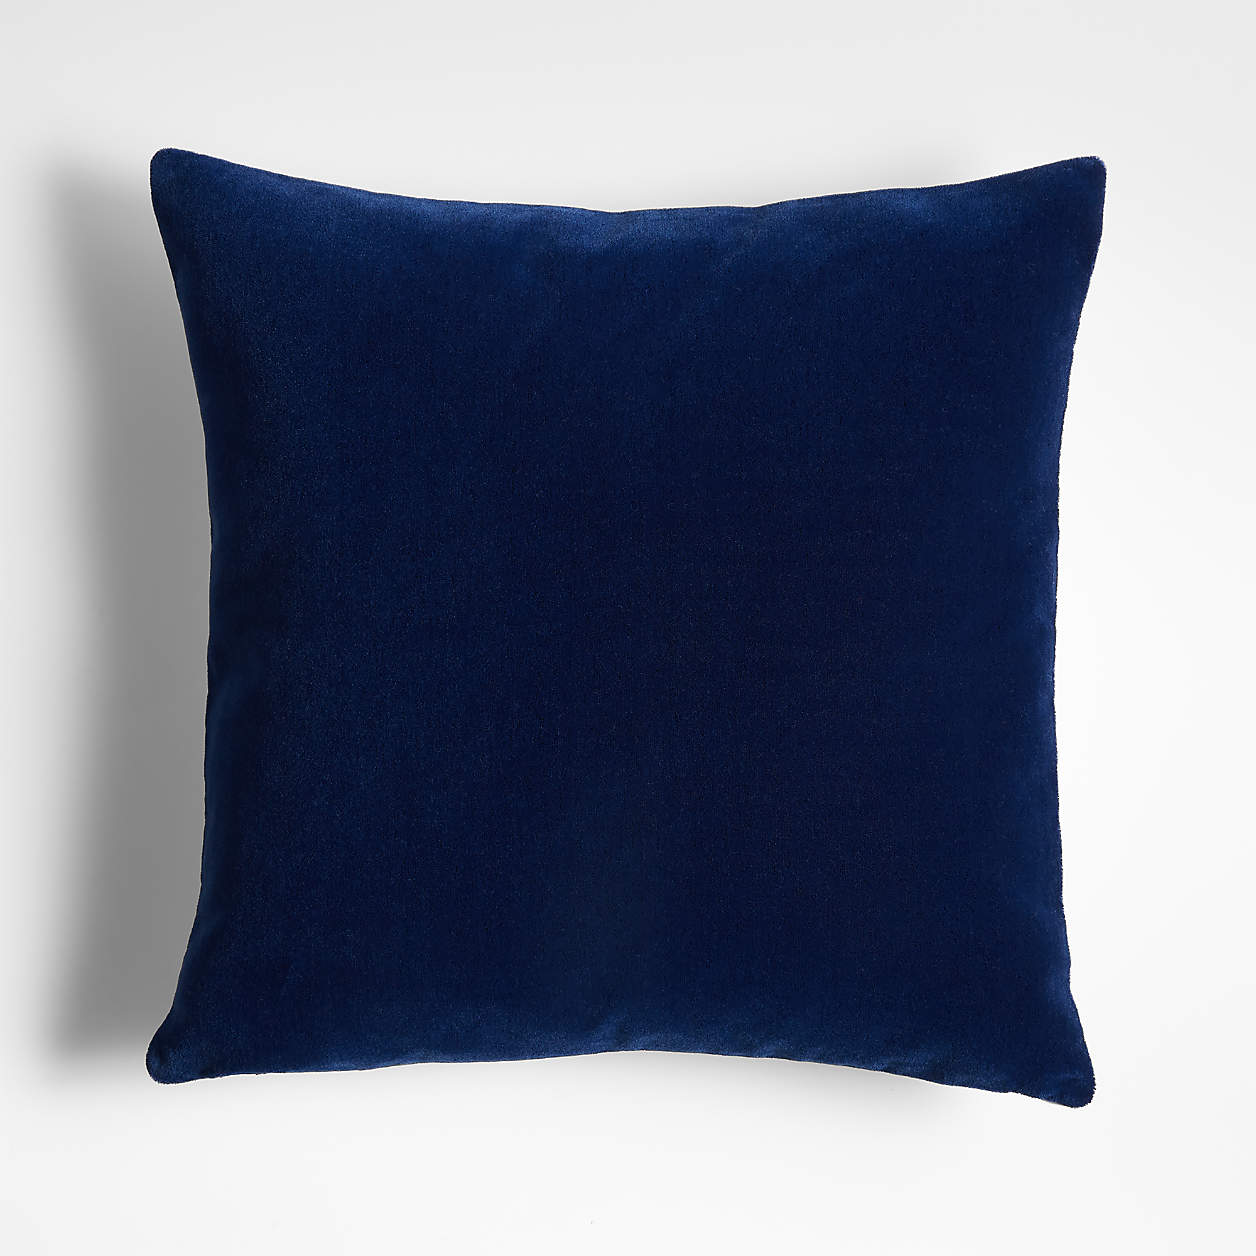 Blue Pillow - Deep Sea 20